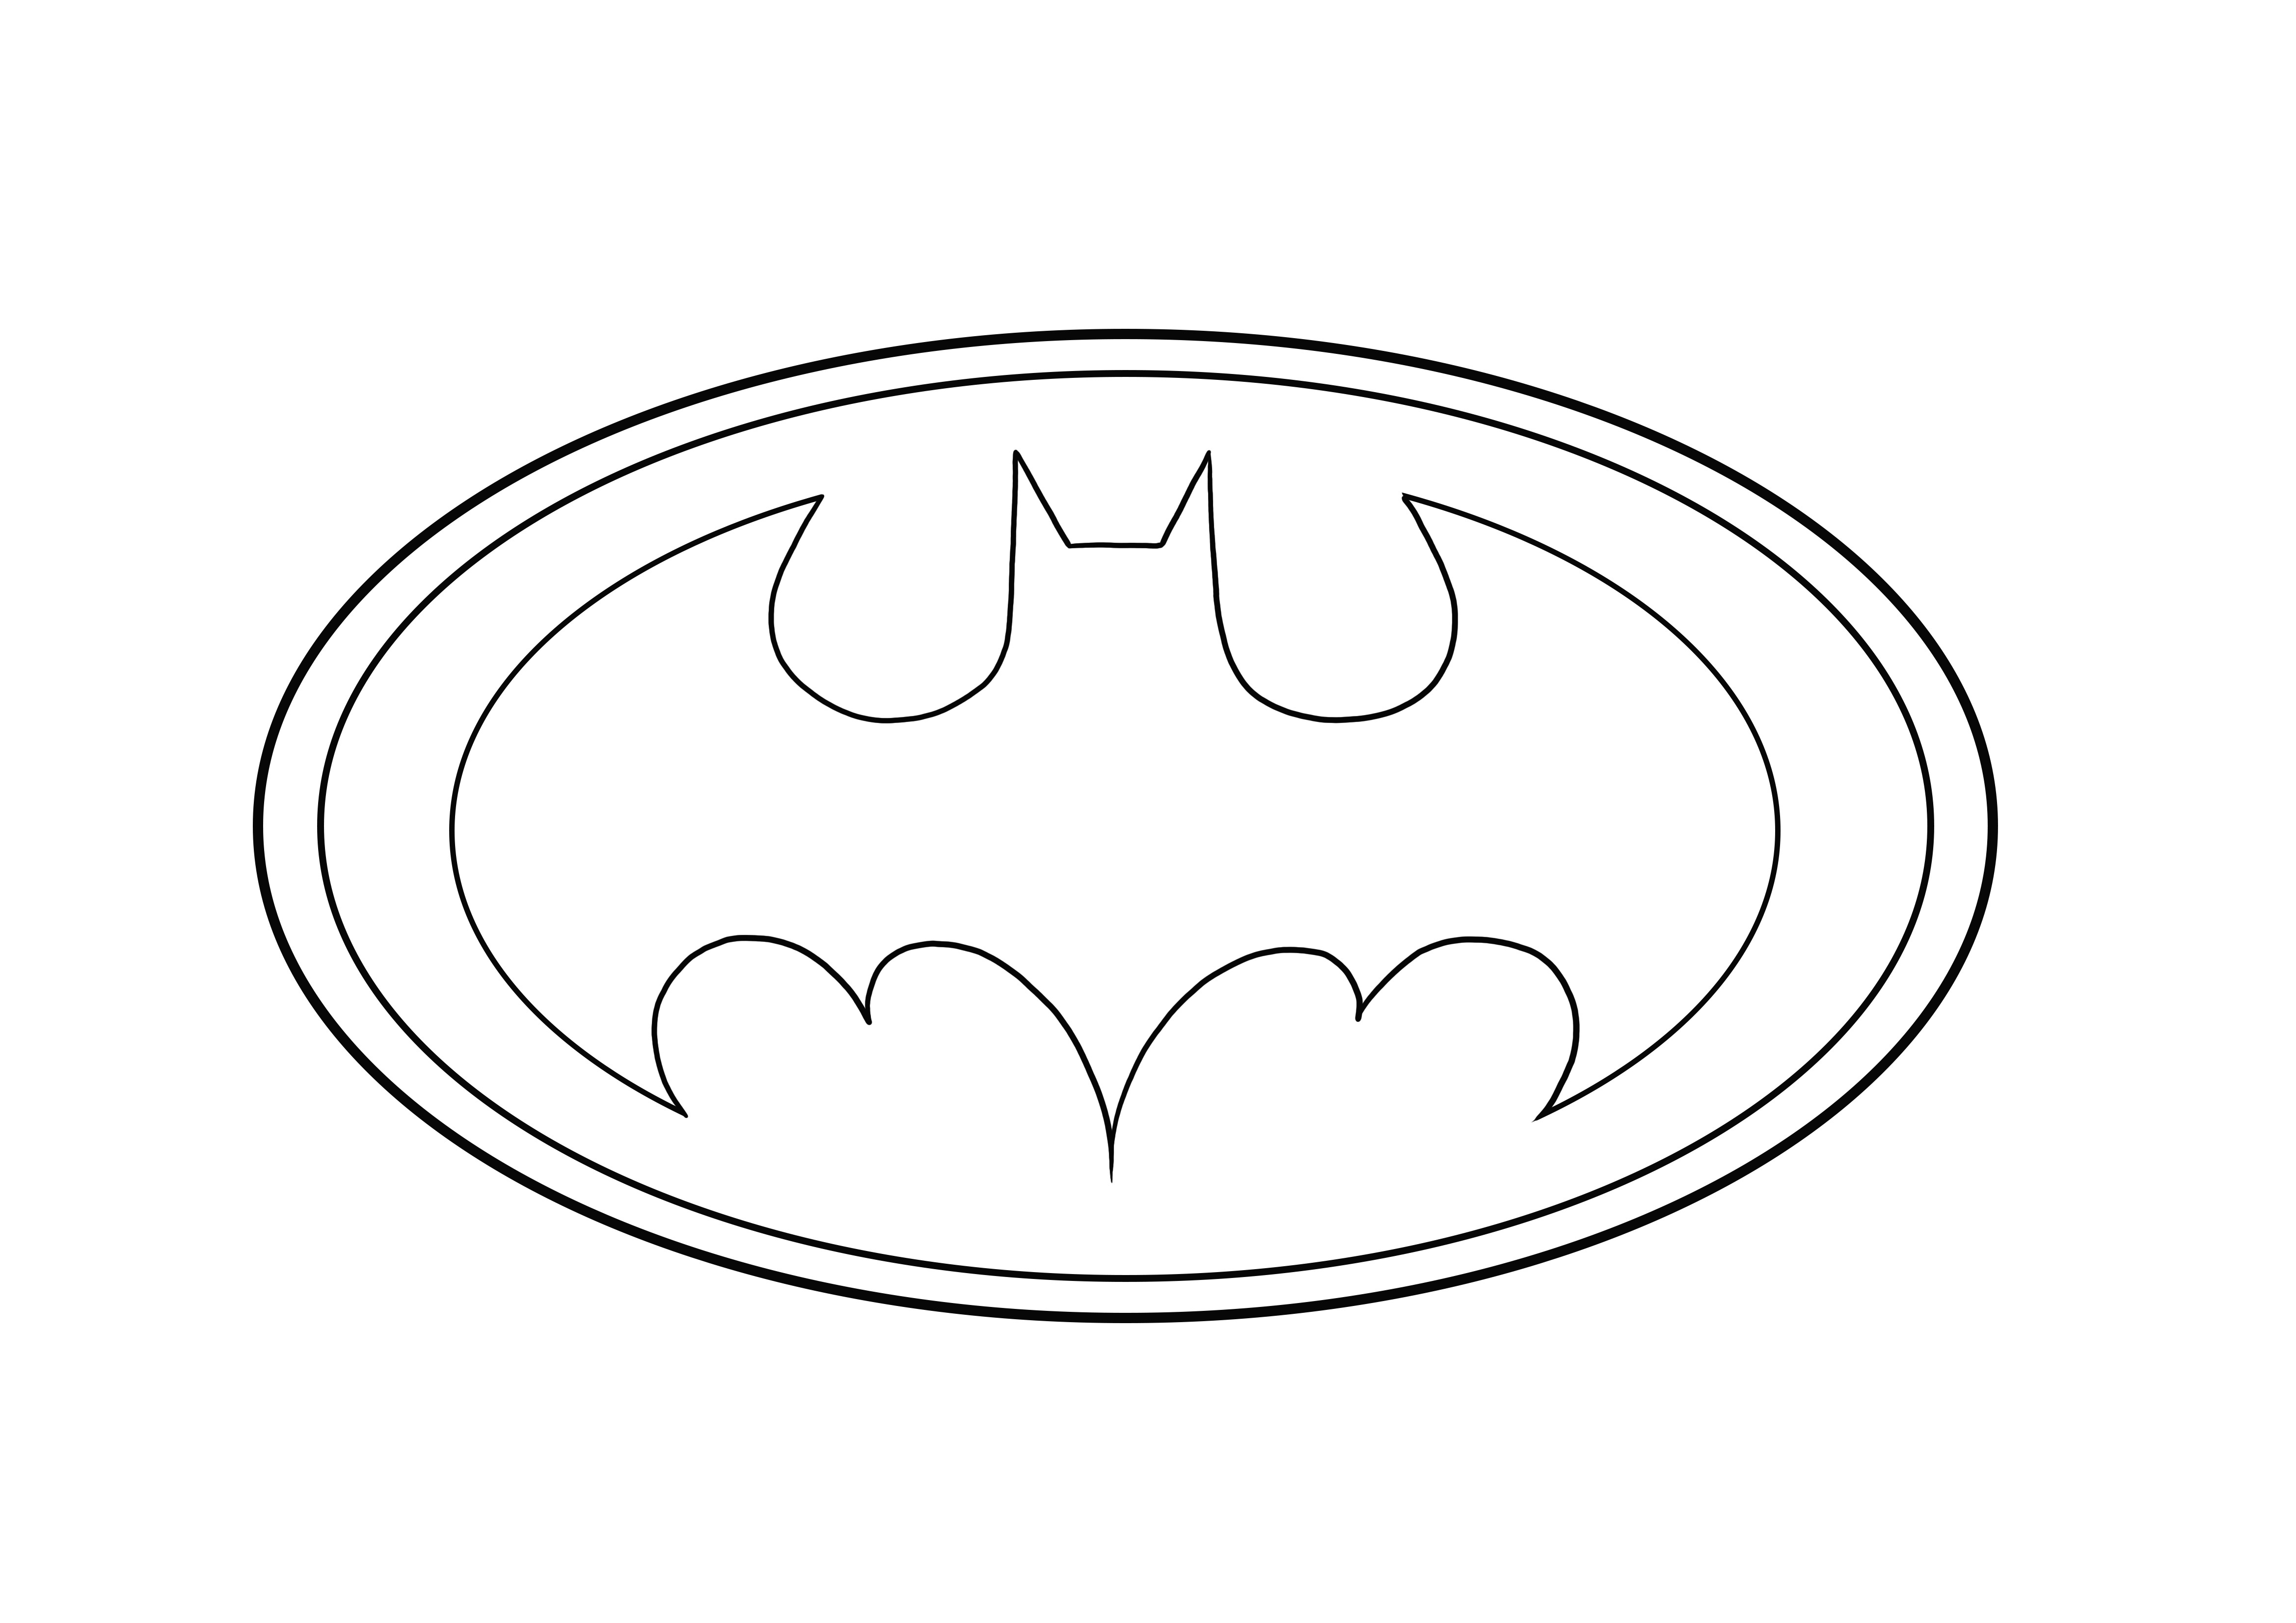 Batman-logo on valmis ladattavaksi ja väritettäväksi ilmaiseksi